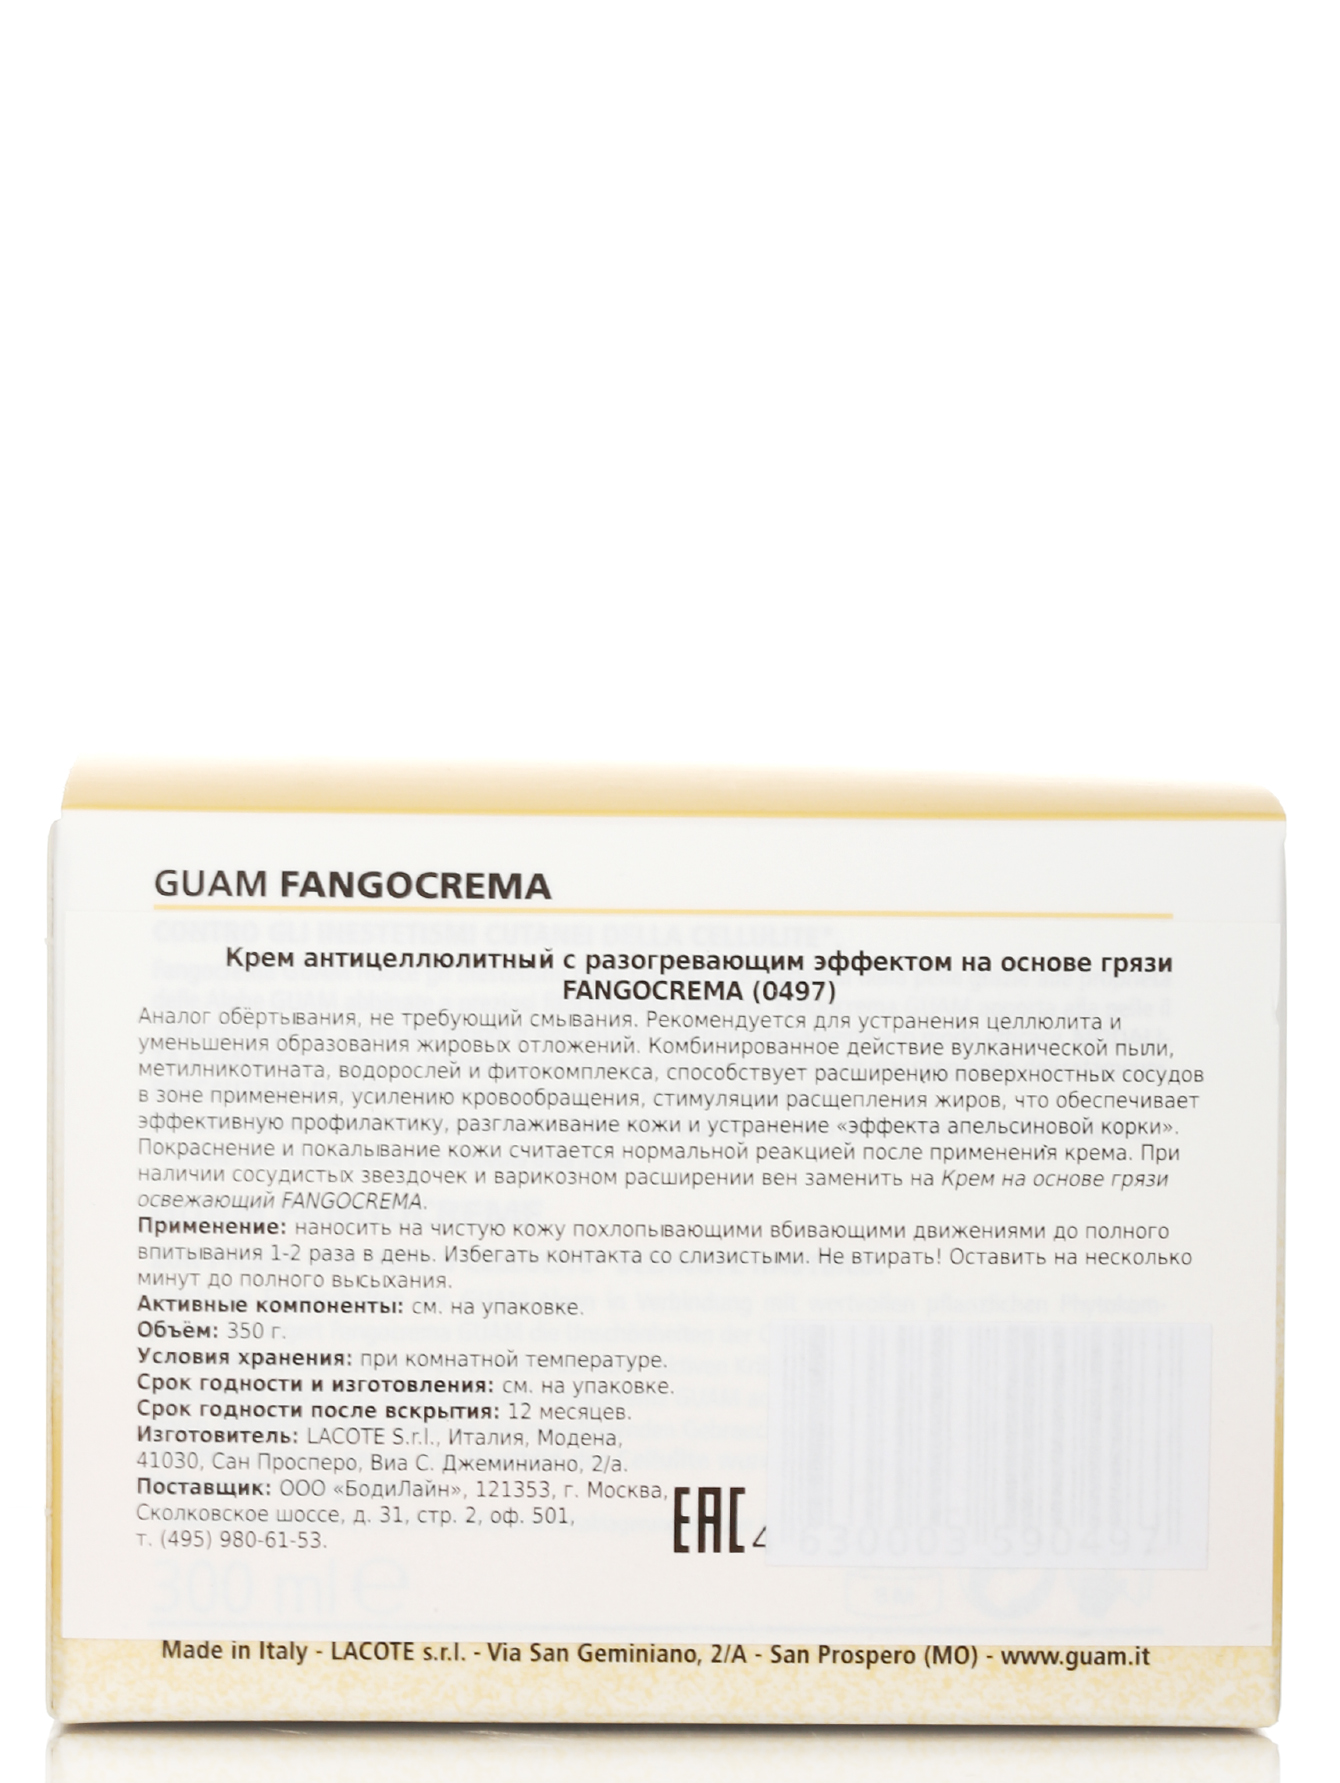  Крем антицеллюлитный с разогревающим эффектом - Fangocrema, 300ml - Модель Верх-Низ